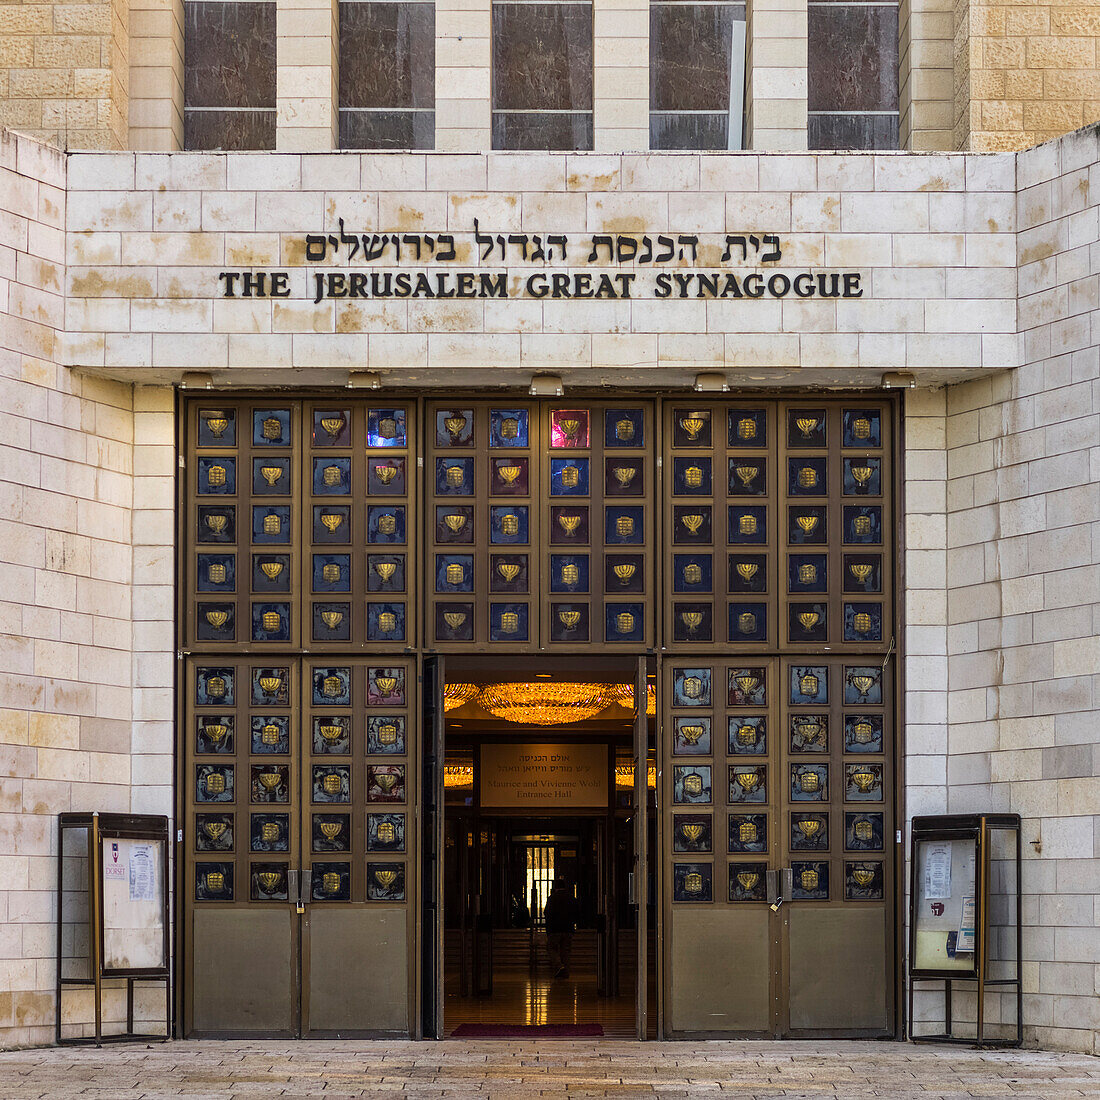 'Eingang zur Jerusalem-Großen Synagoge; Jerusalem, Israel'